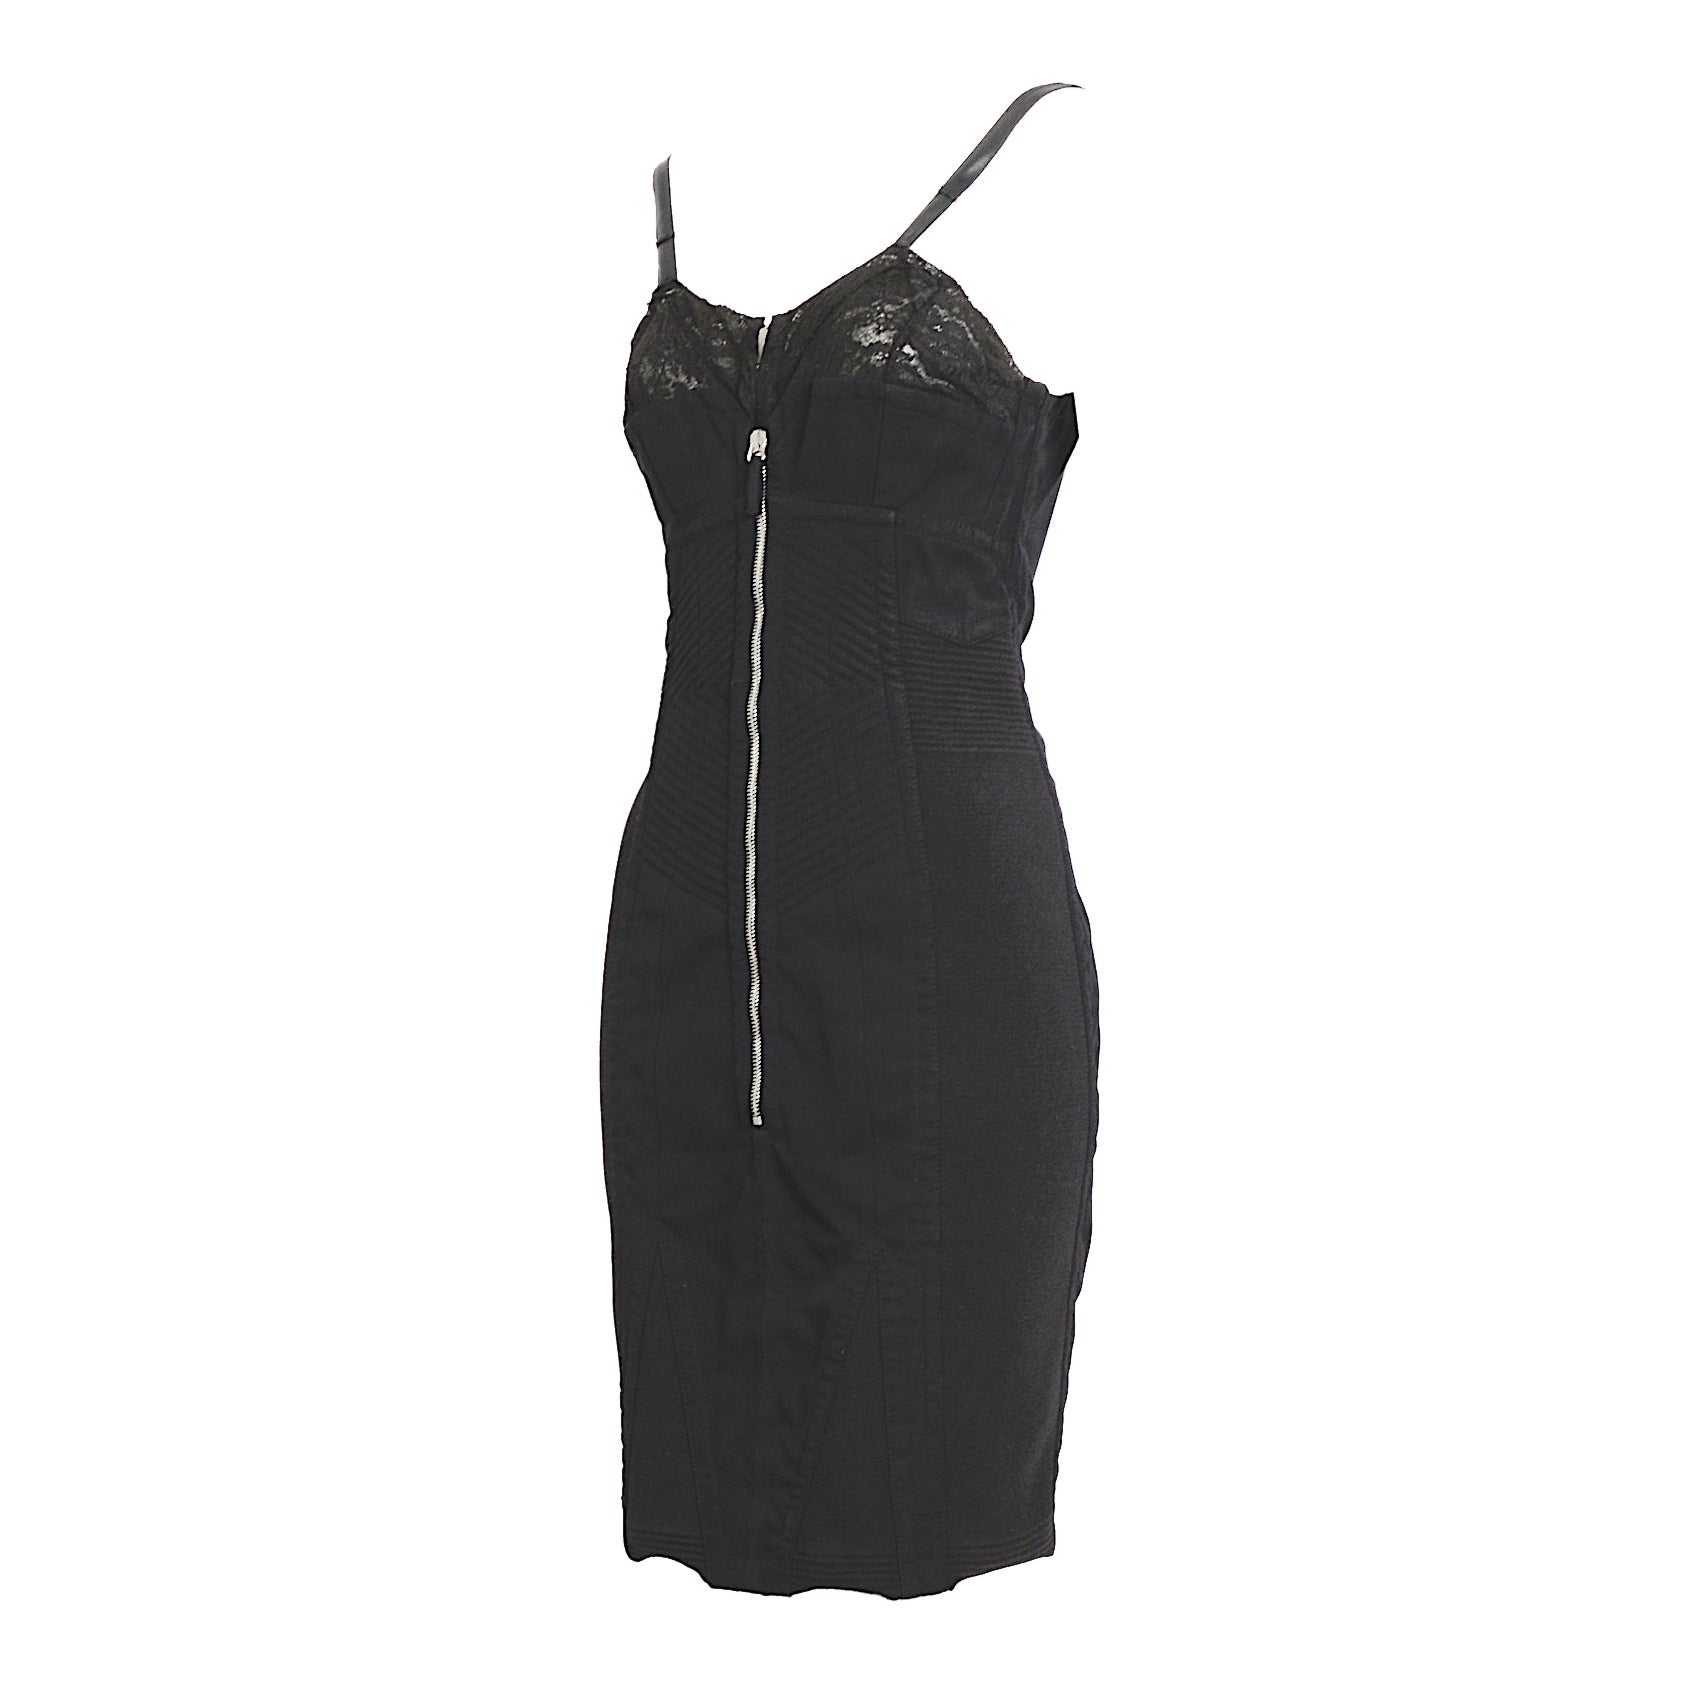 Jean Paul Gaultier 1990s vintage Important lingerie style corset bra black dress For Sale